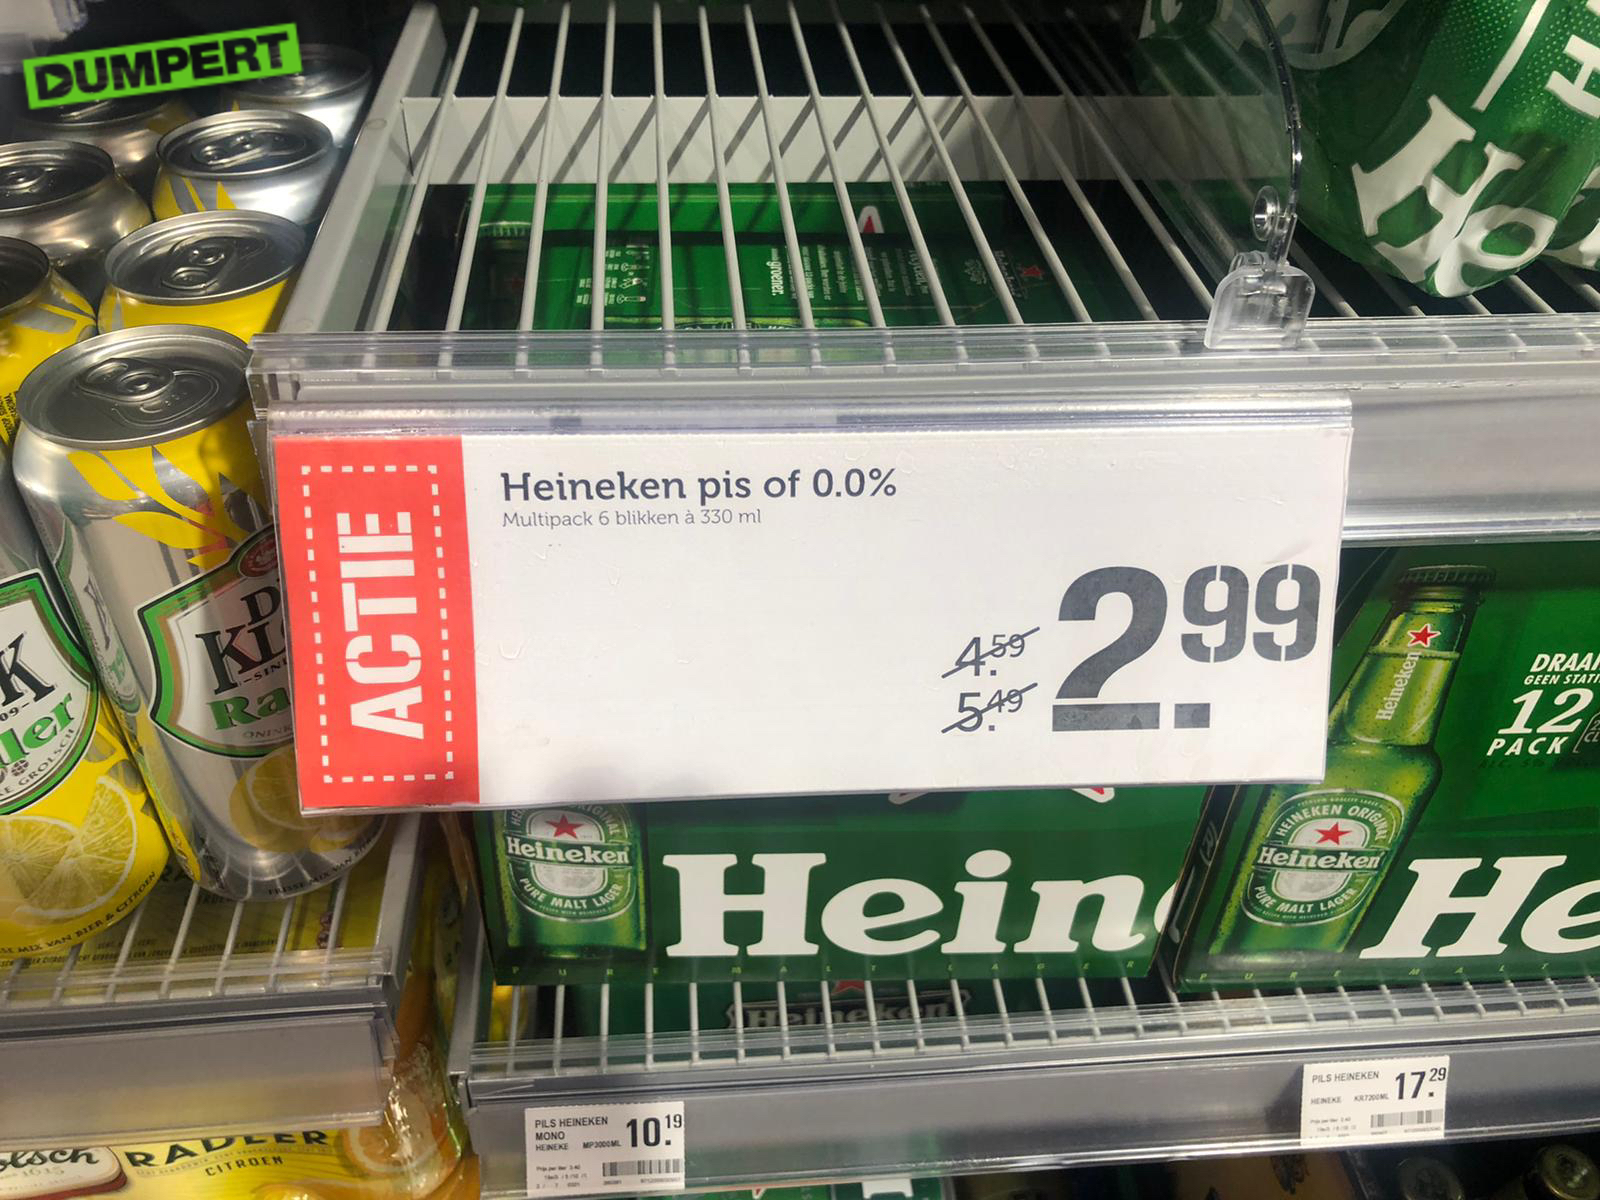 Heineken Pis